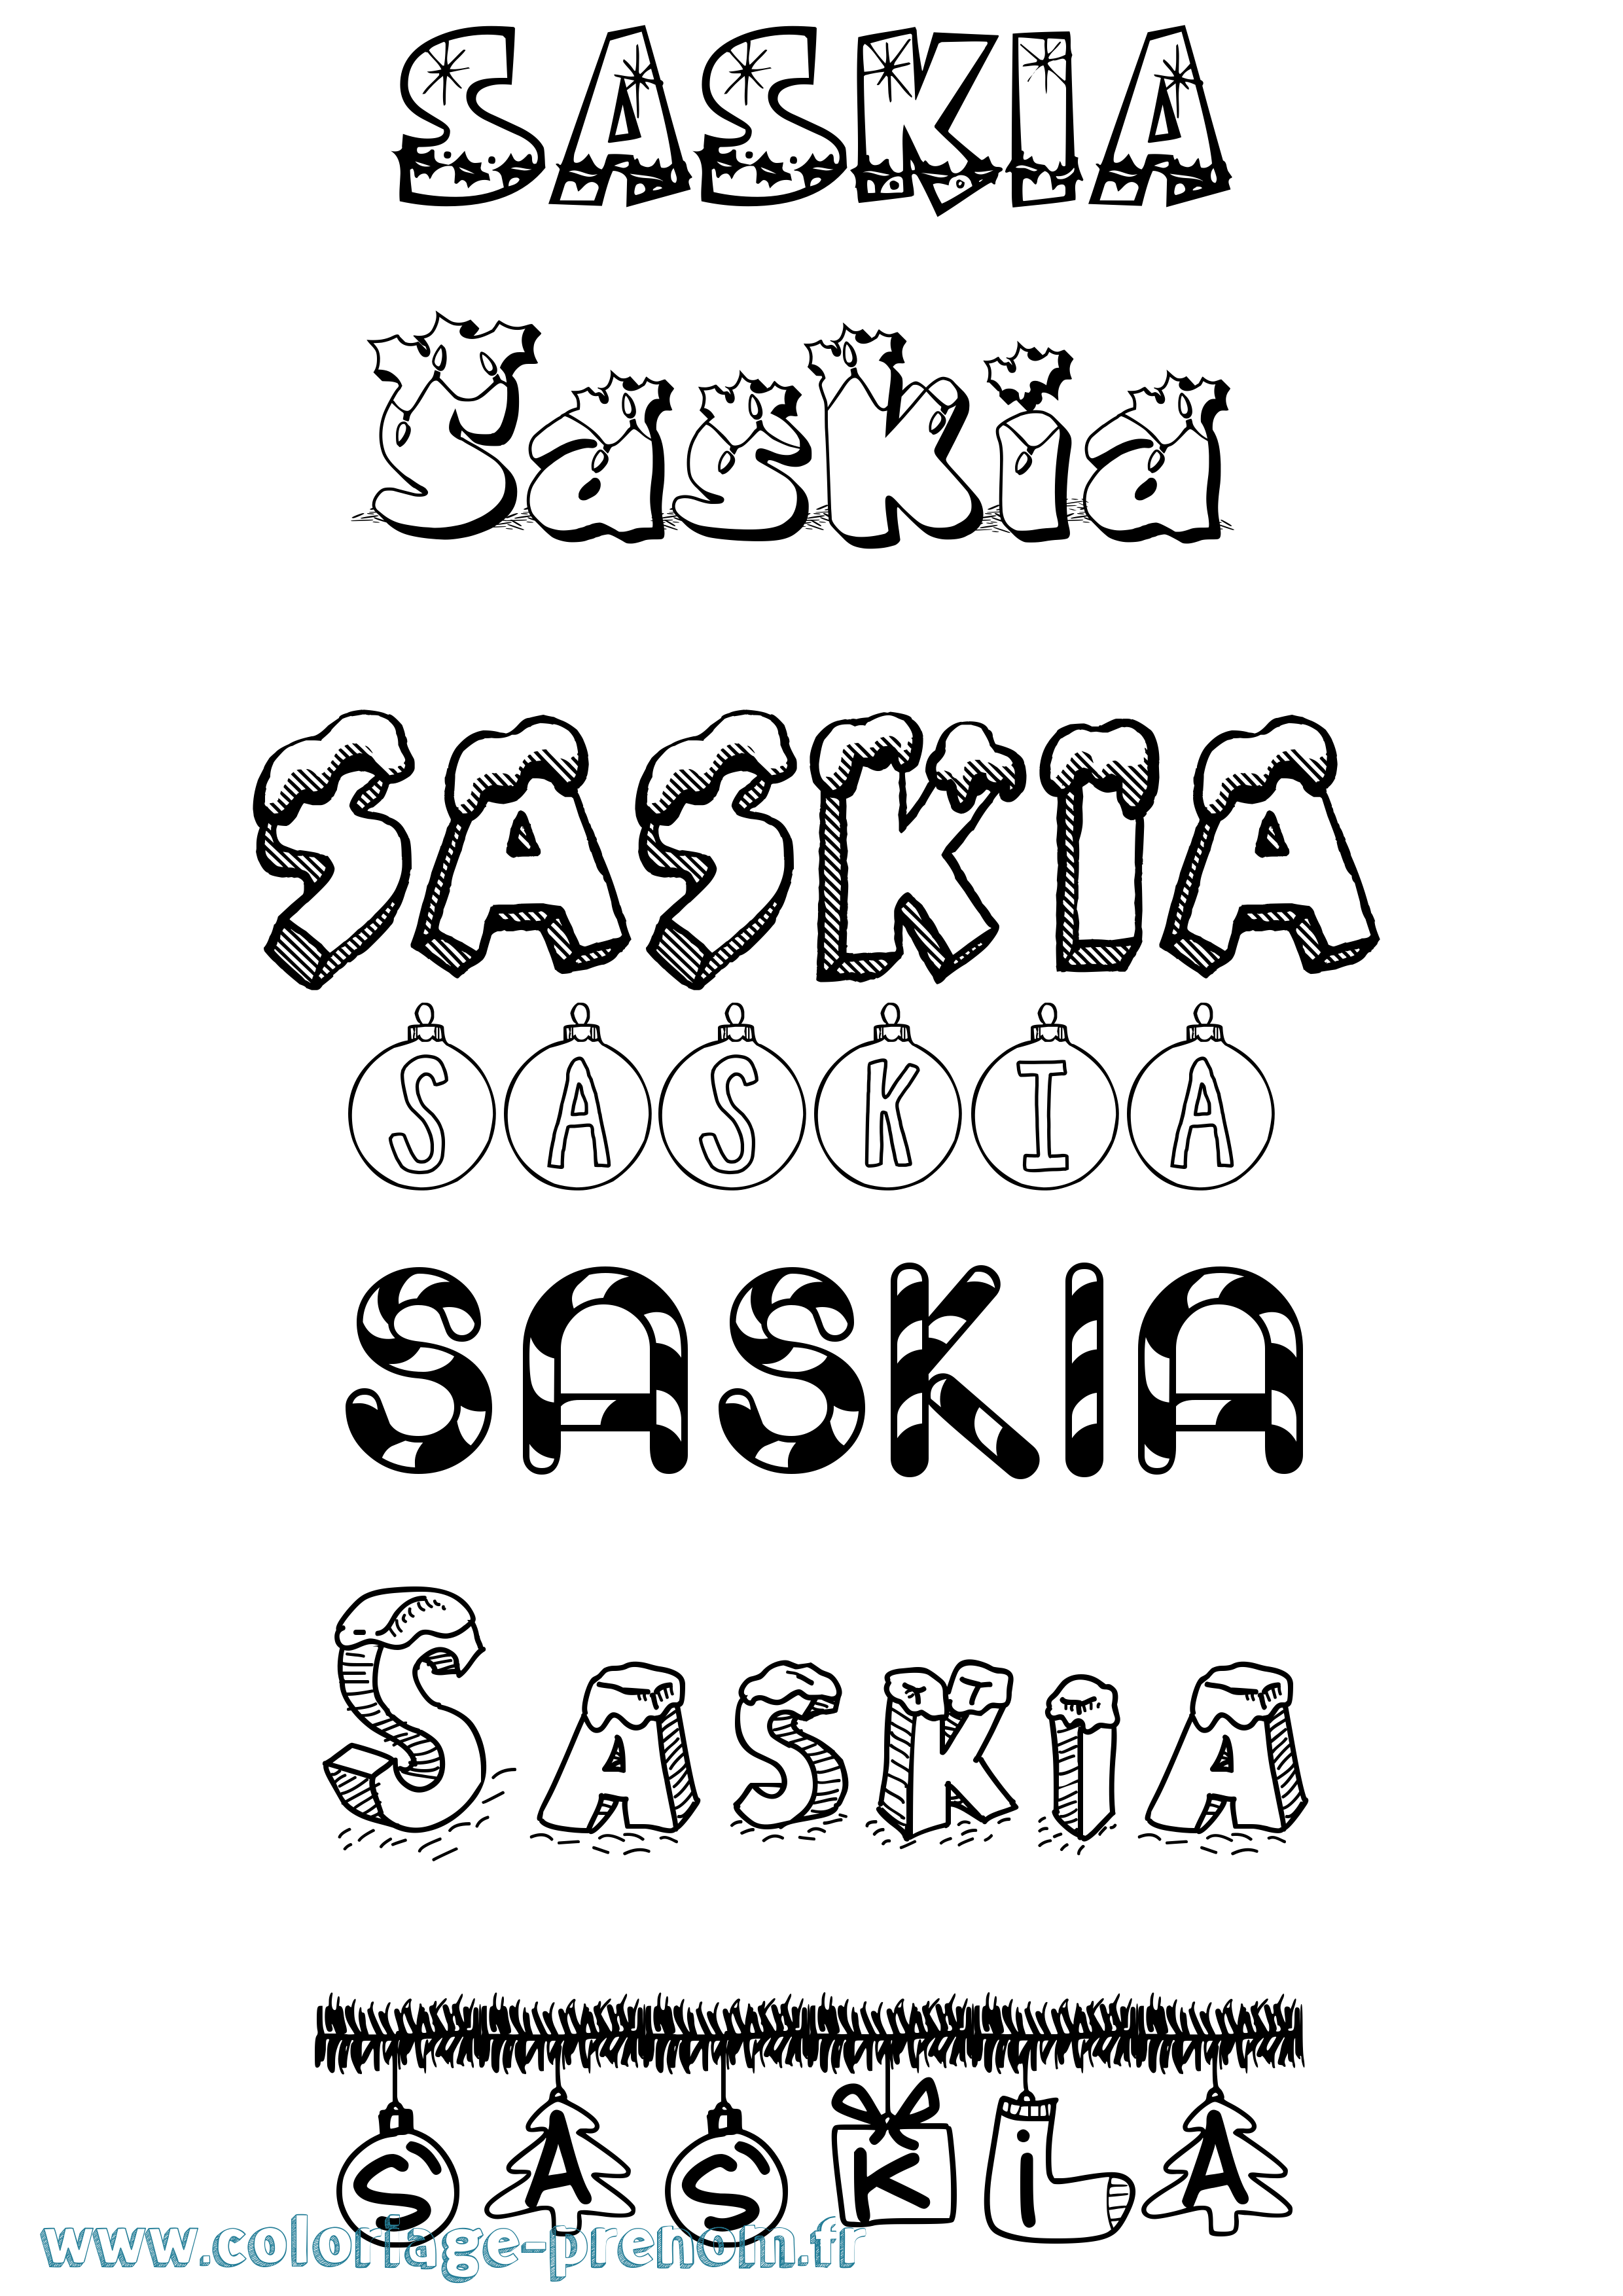 Coloriage prénom Saskia